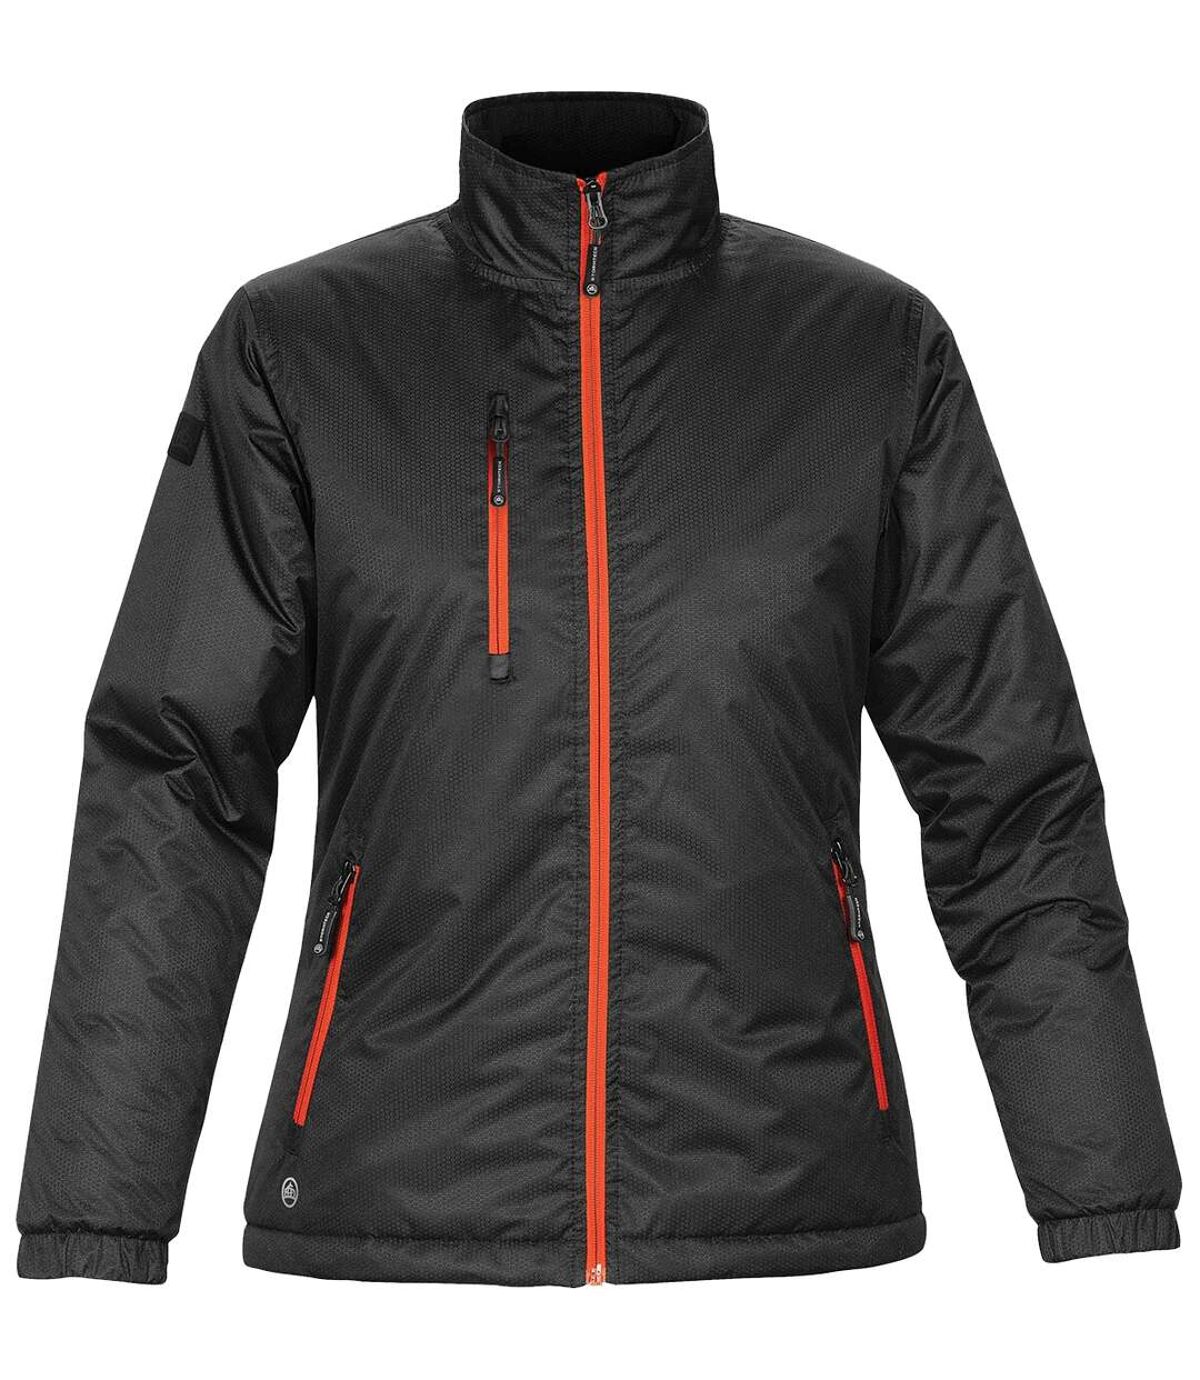 Stormtech Ladies/Womens Axis Water Resistant Jacket (Black/Orange) - UTBC2080